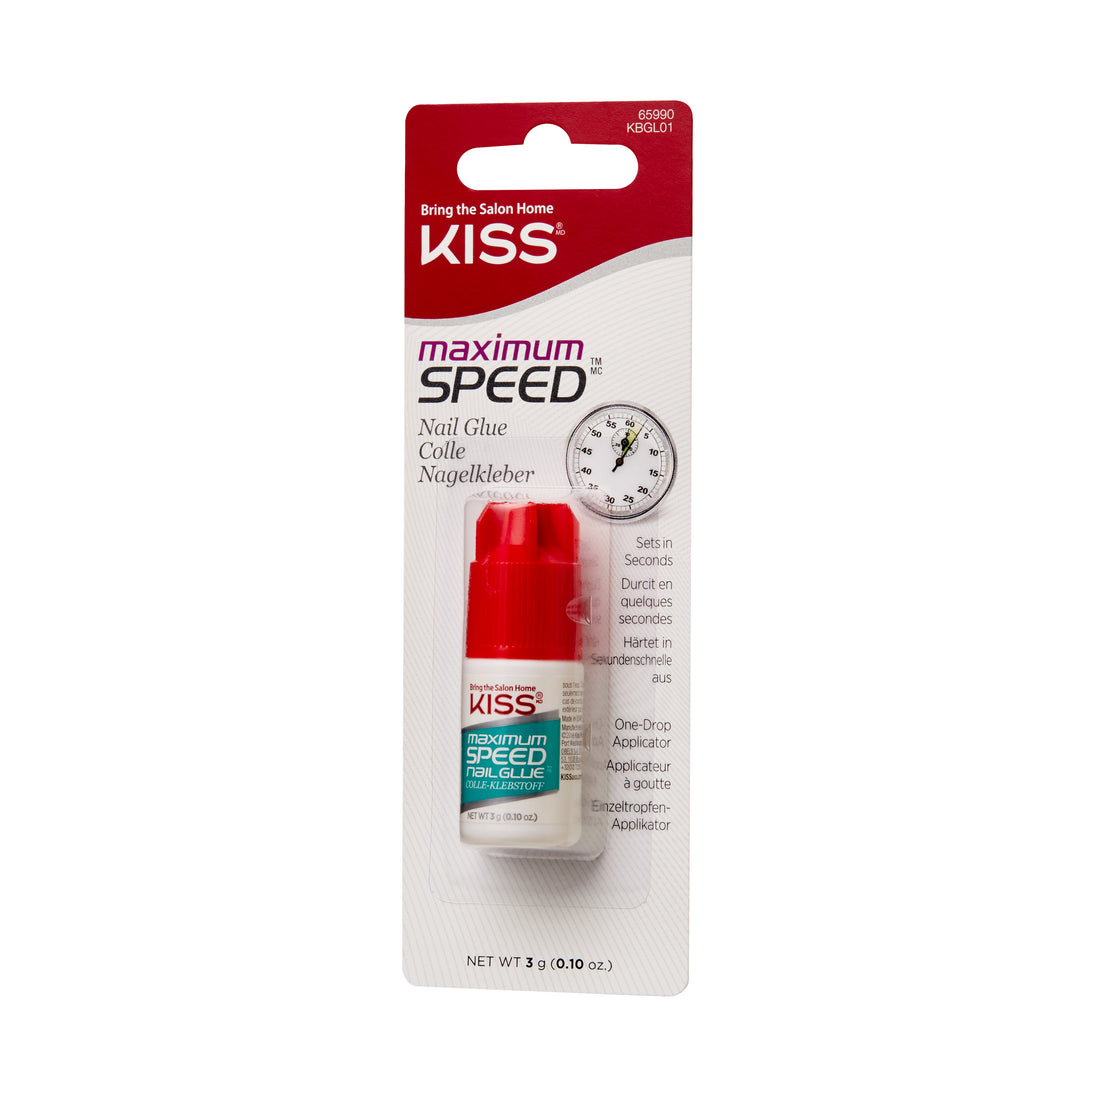 KISS Maximum Speed Nail Glue, Net Wt. 3g (0.10 oz.)